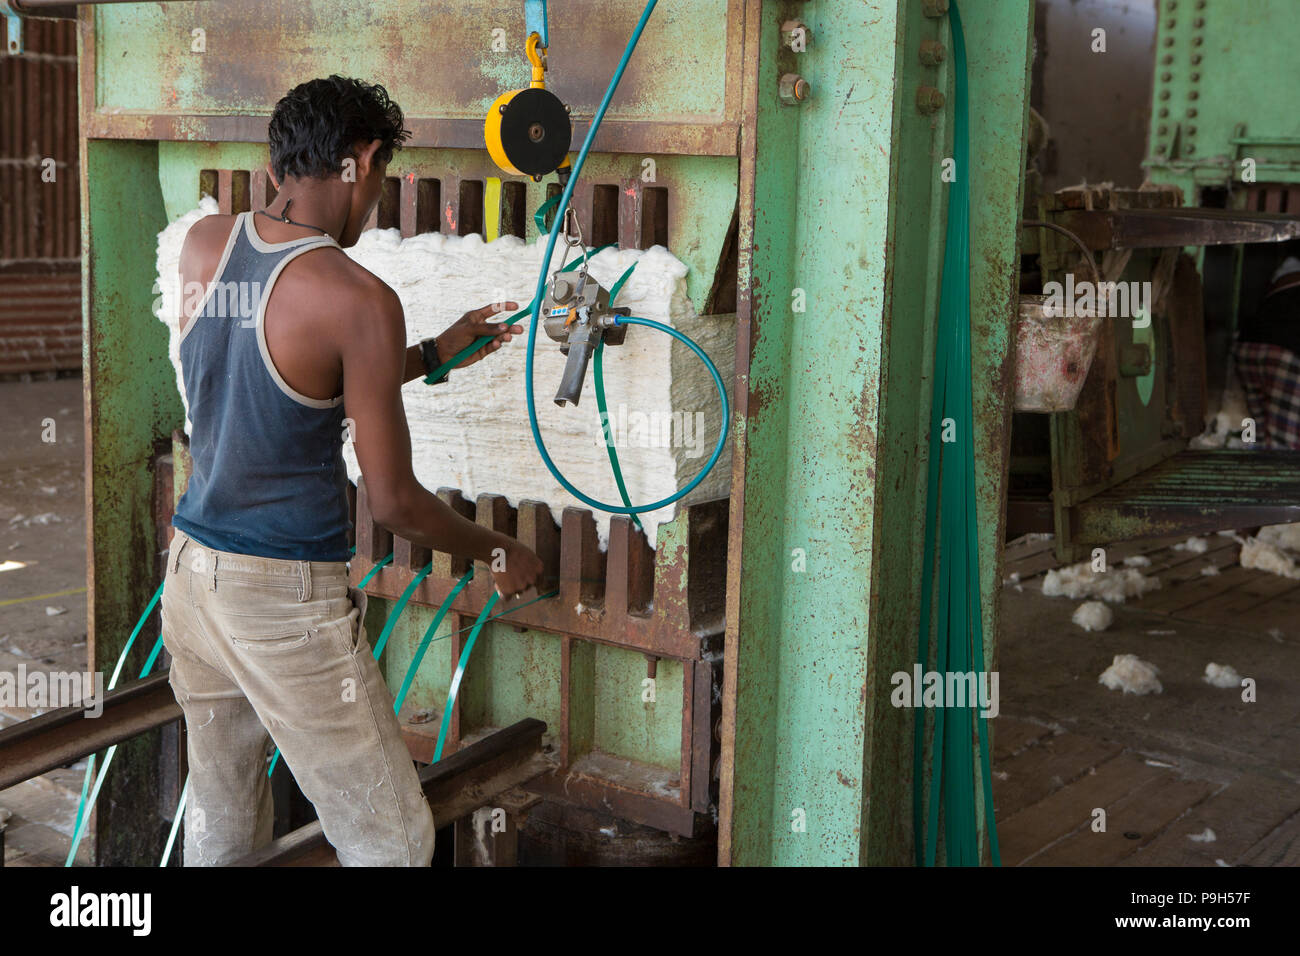 Baumwolle wird in einem entkörnungsunternehmen in Madhya Pradesh, Indien Entkörnt. Stockfoto